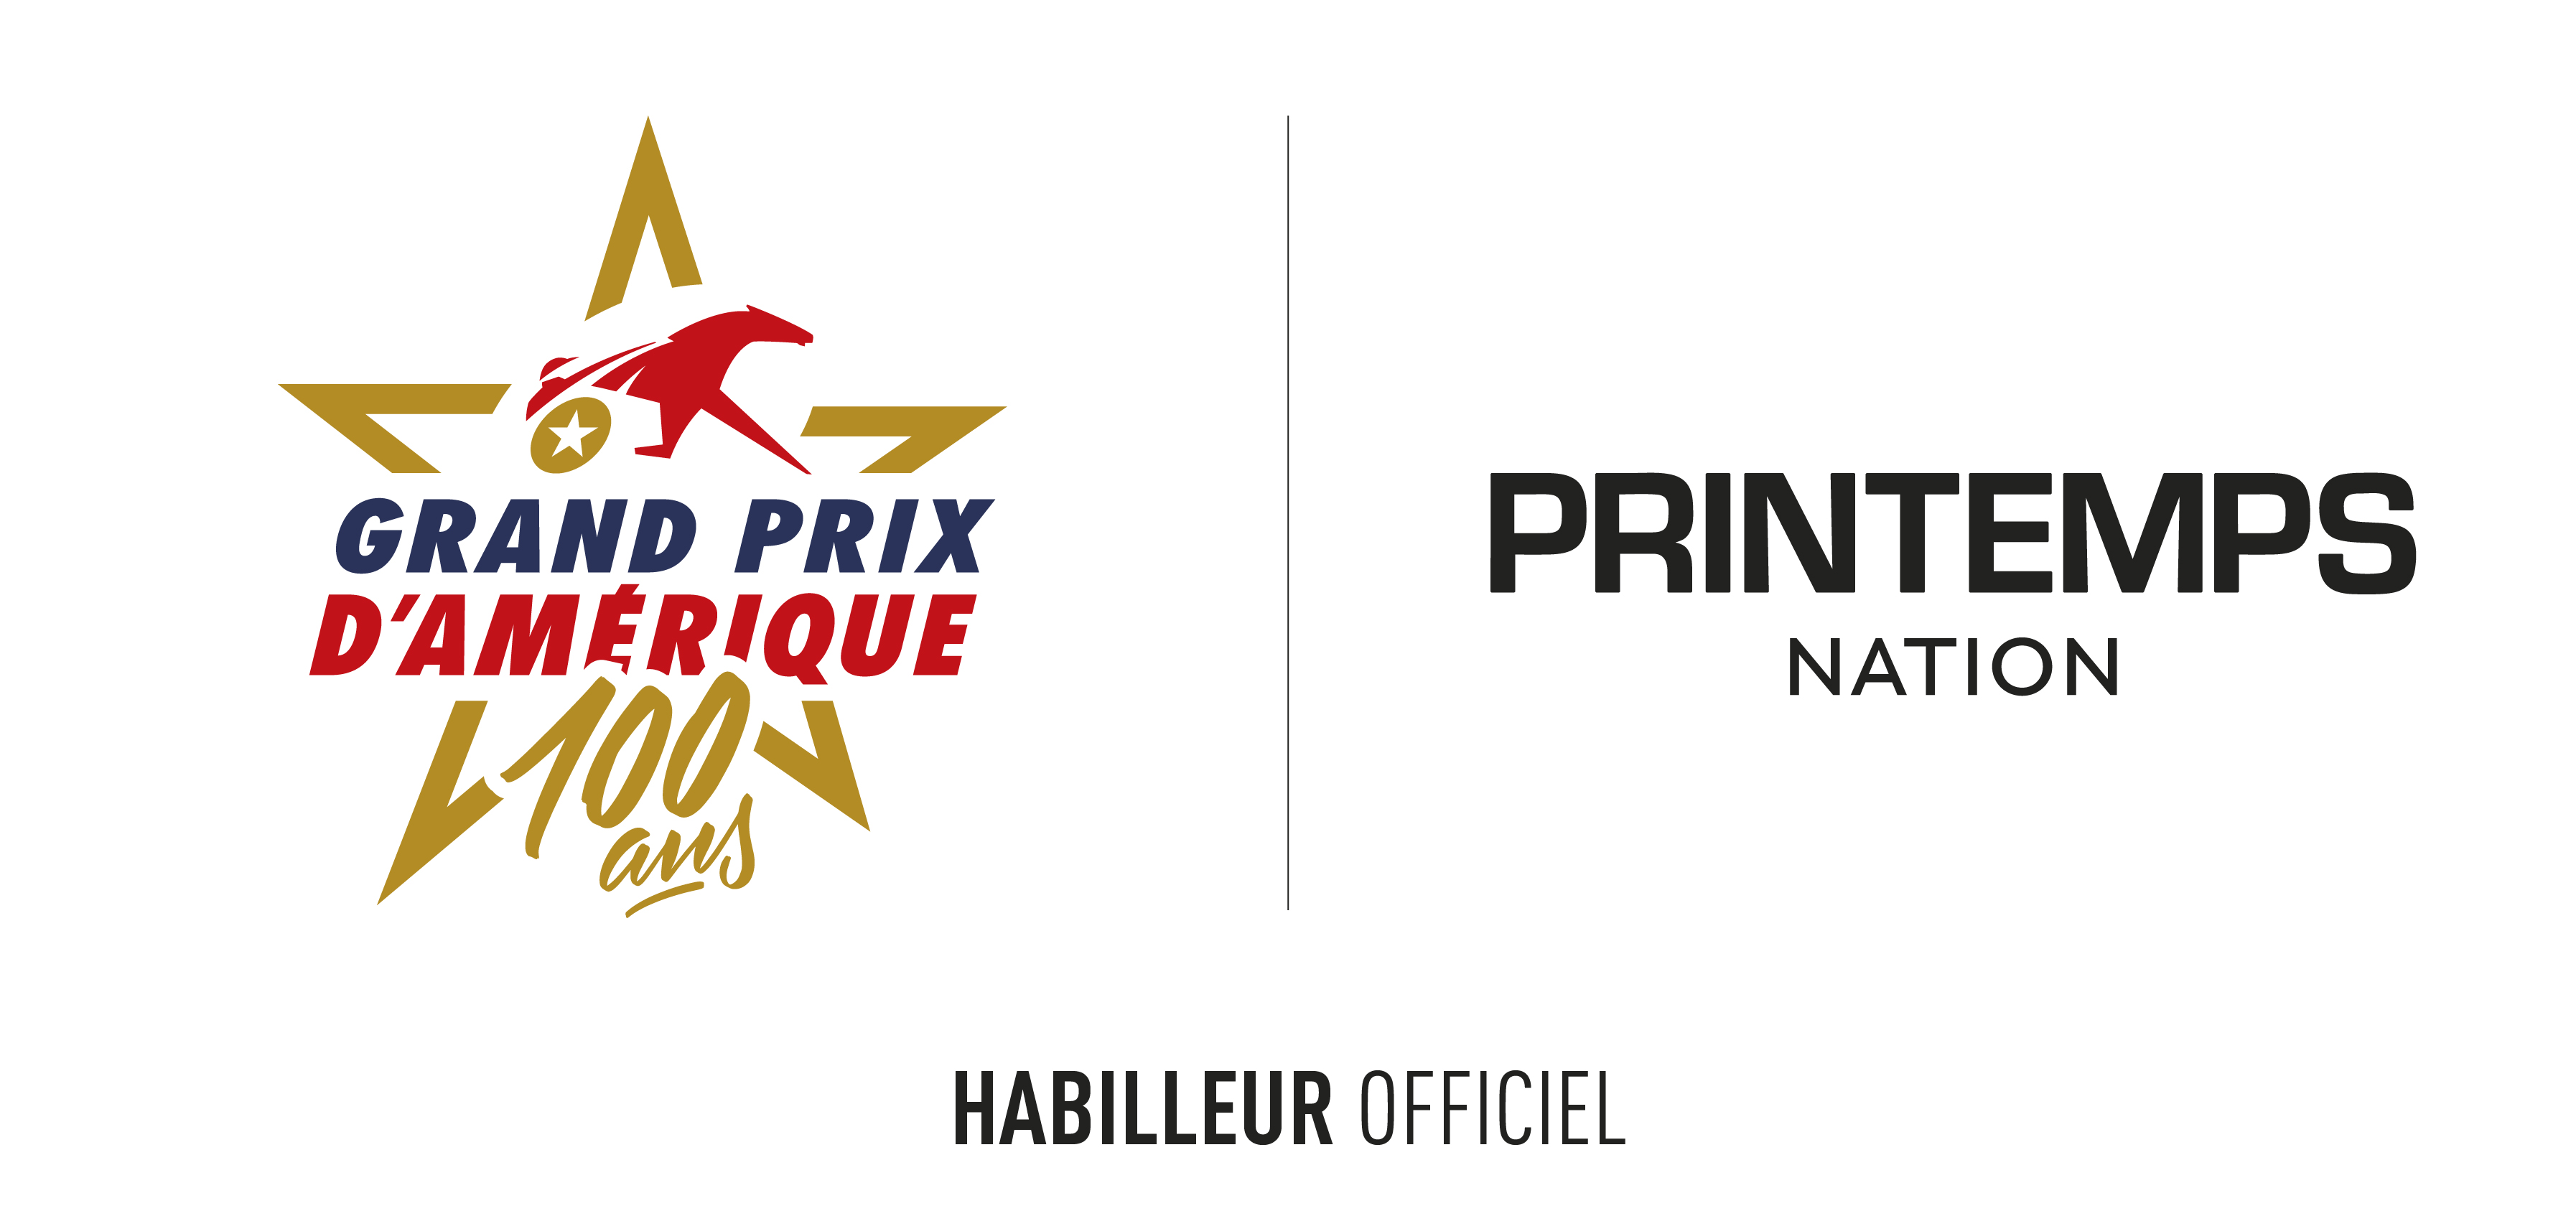 Printemps Nation becomes official dressmaker of the Grand Prix d’Amérique